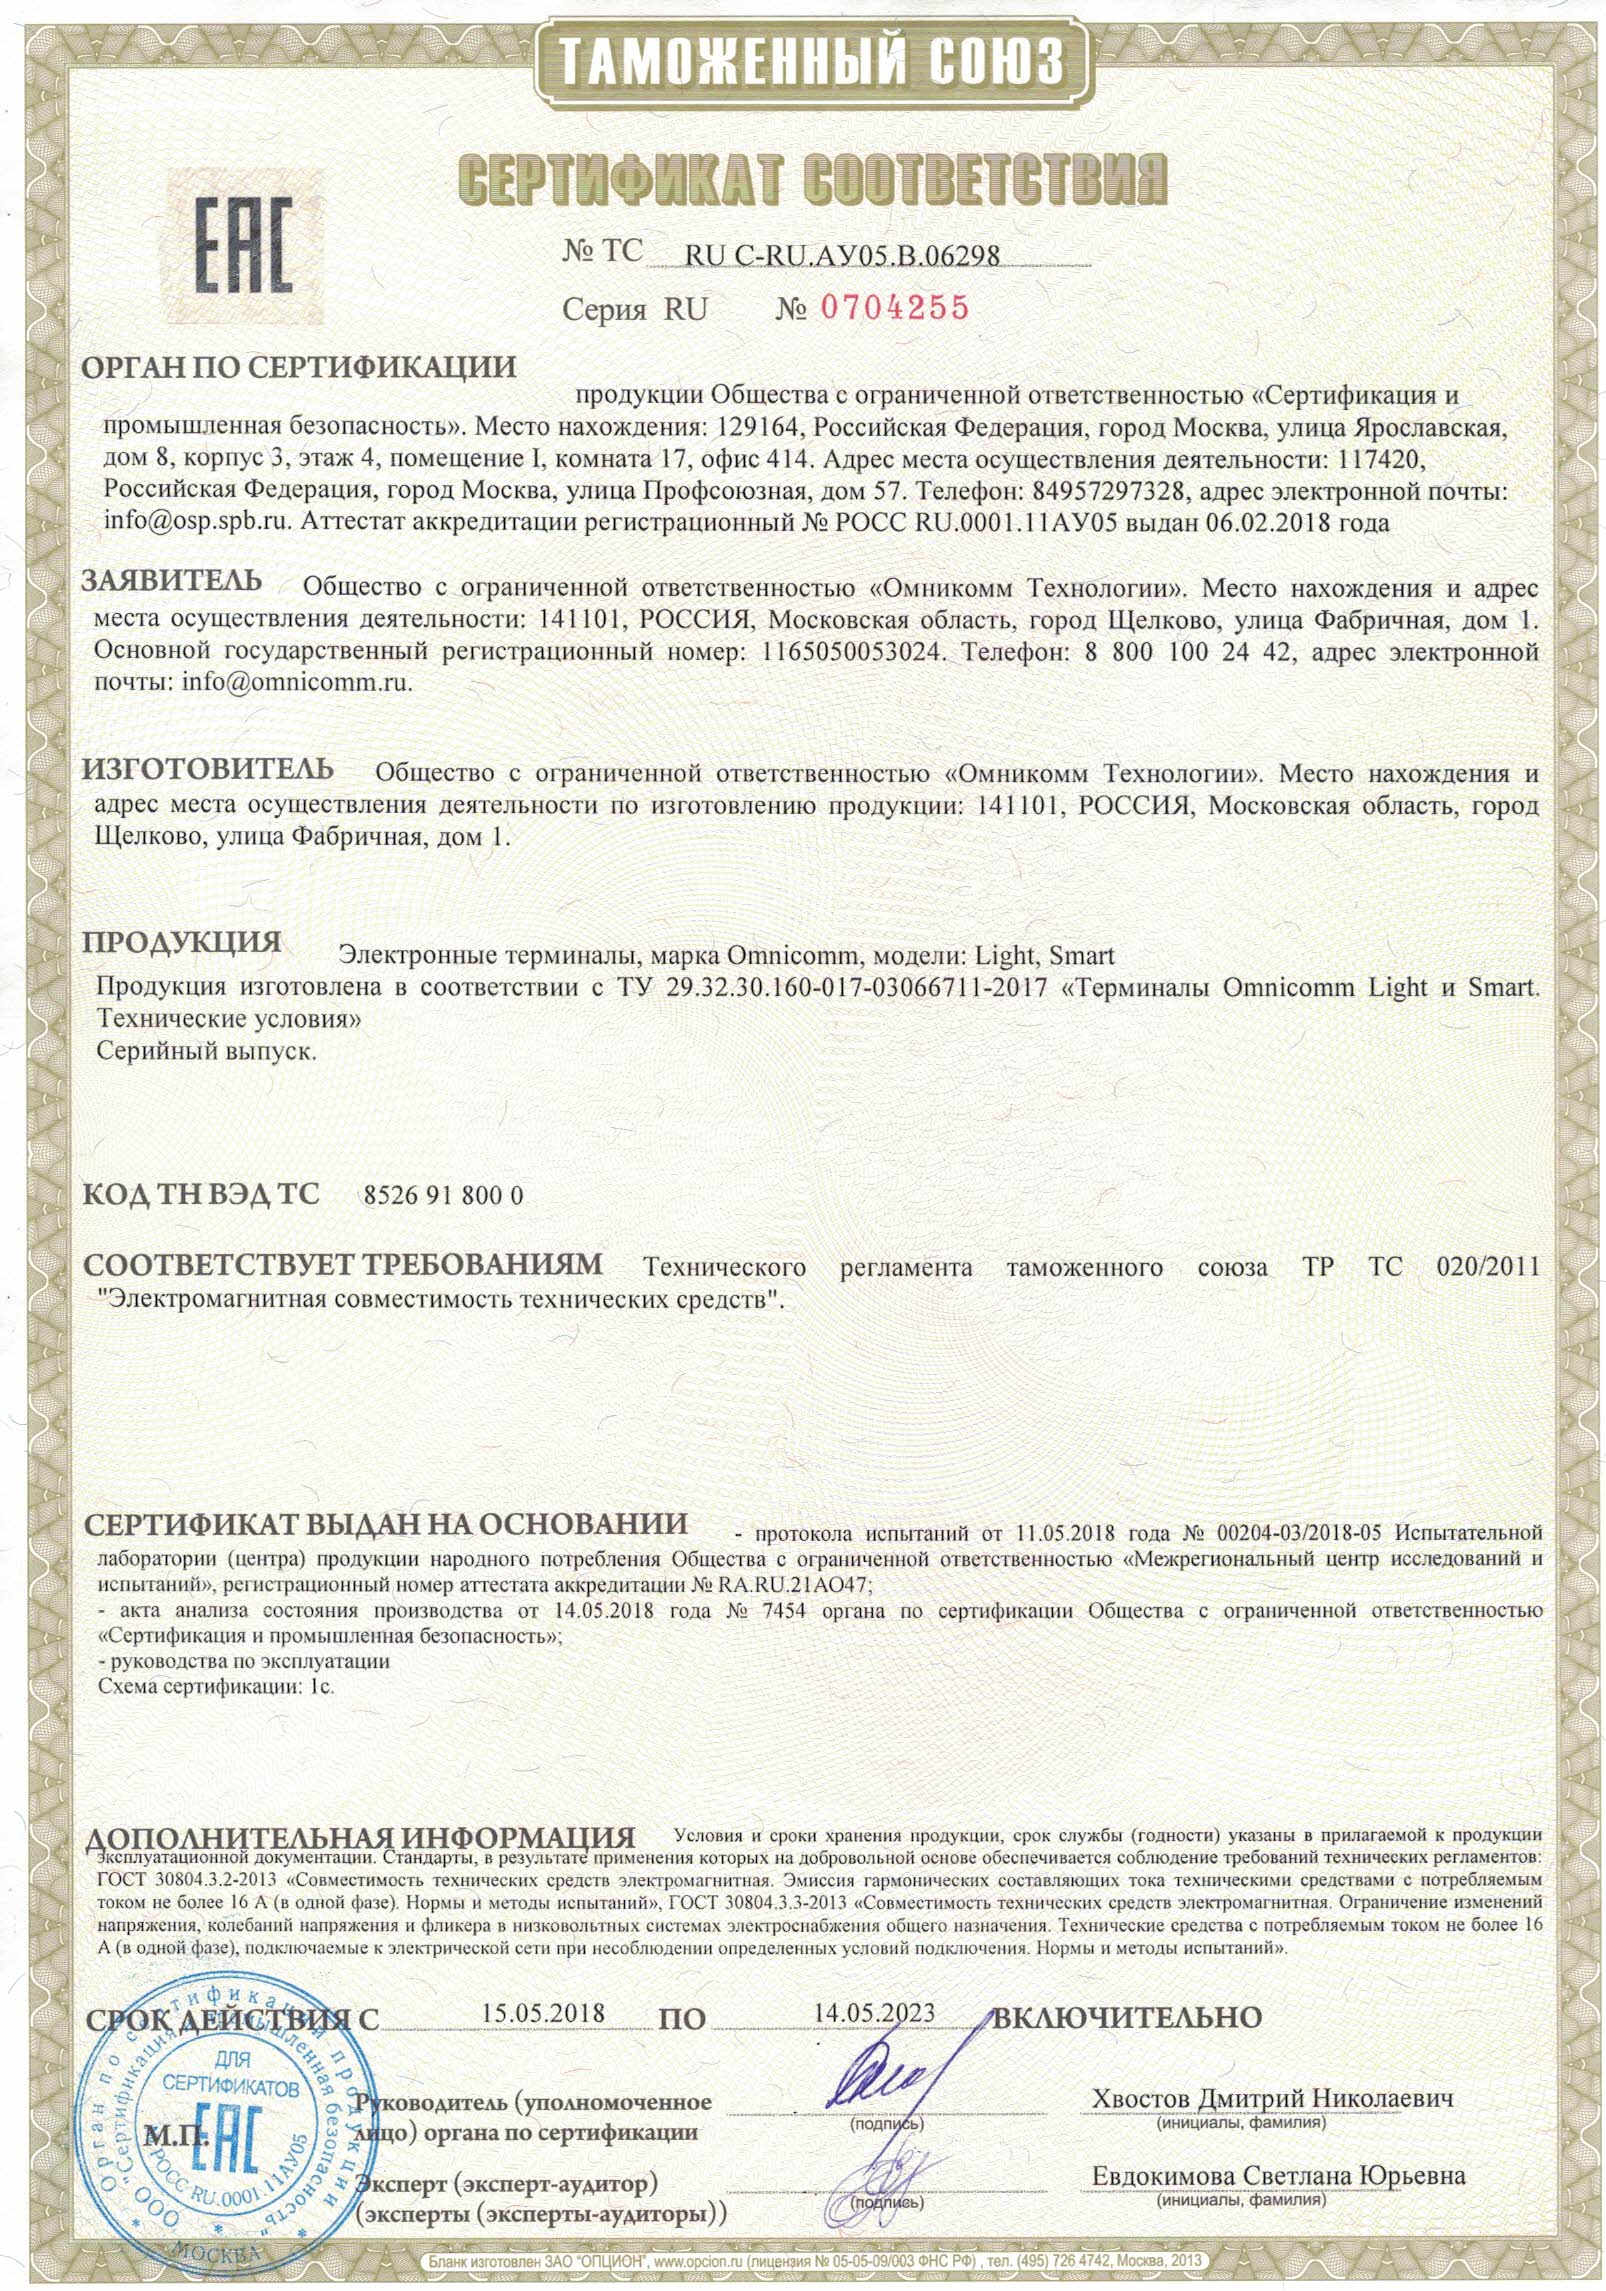  Сертификат соответствия требованиям технического регламента таможенного союза ТР ТС 020/2011 